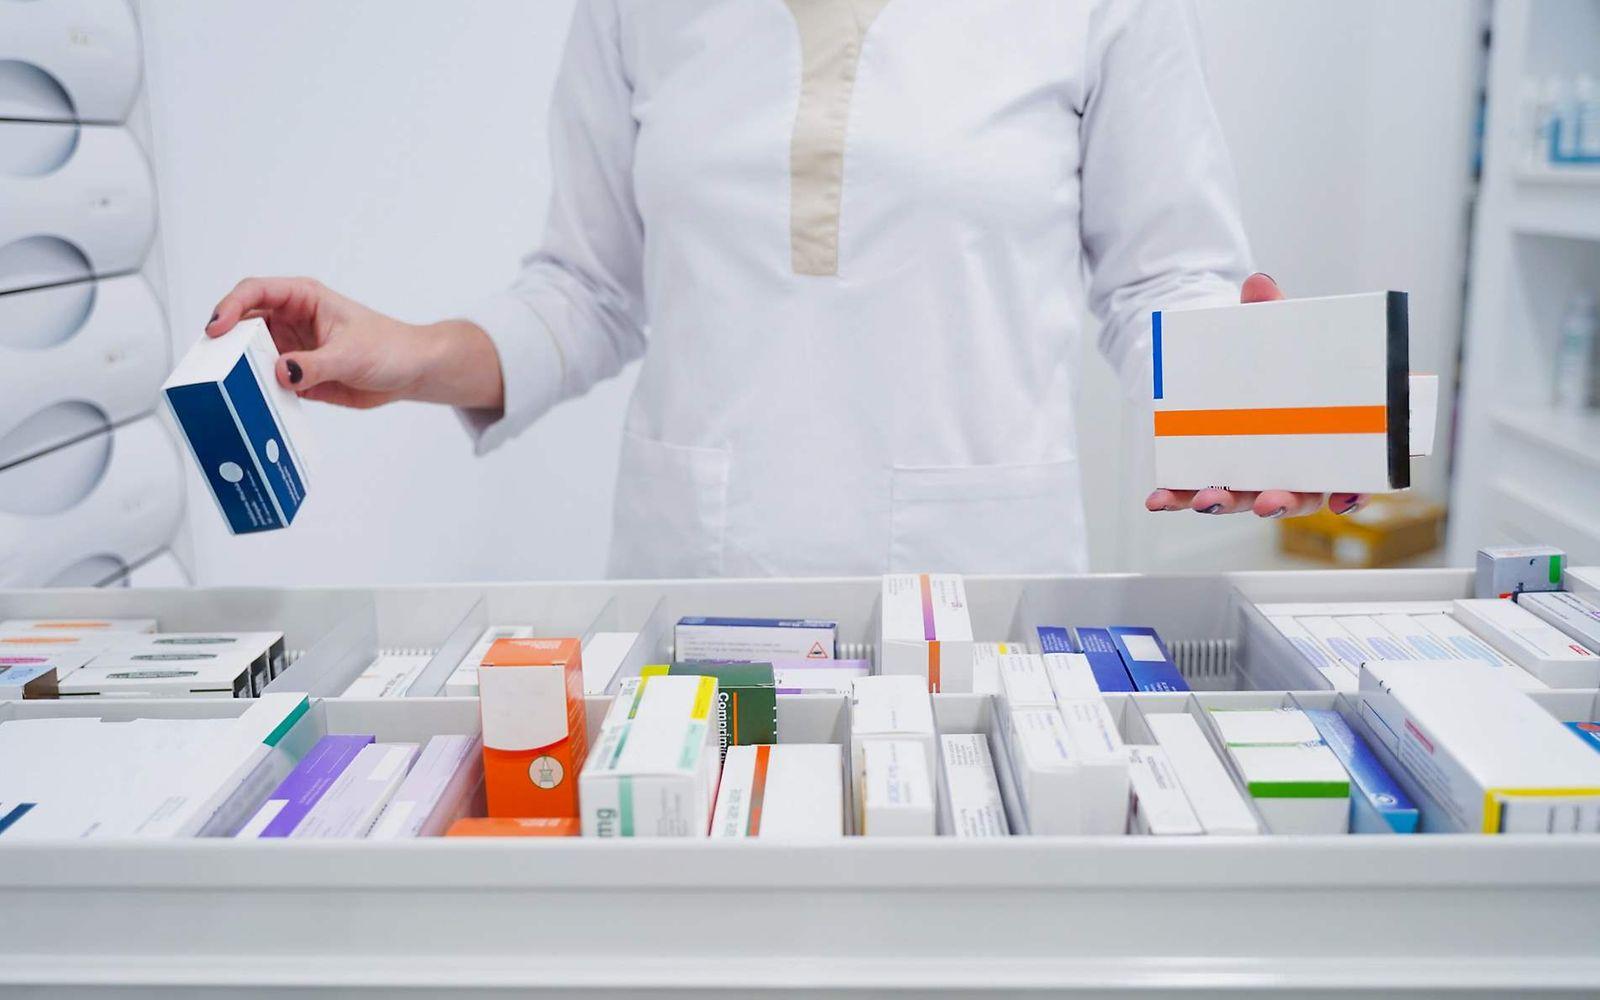 Bild: Apothekerin an einer Schublade mit Arzneimitteln.